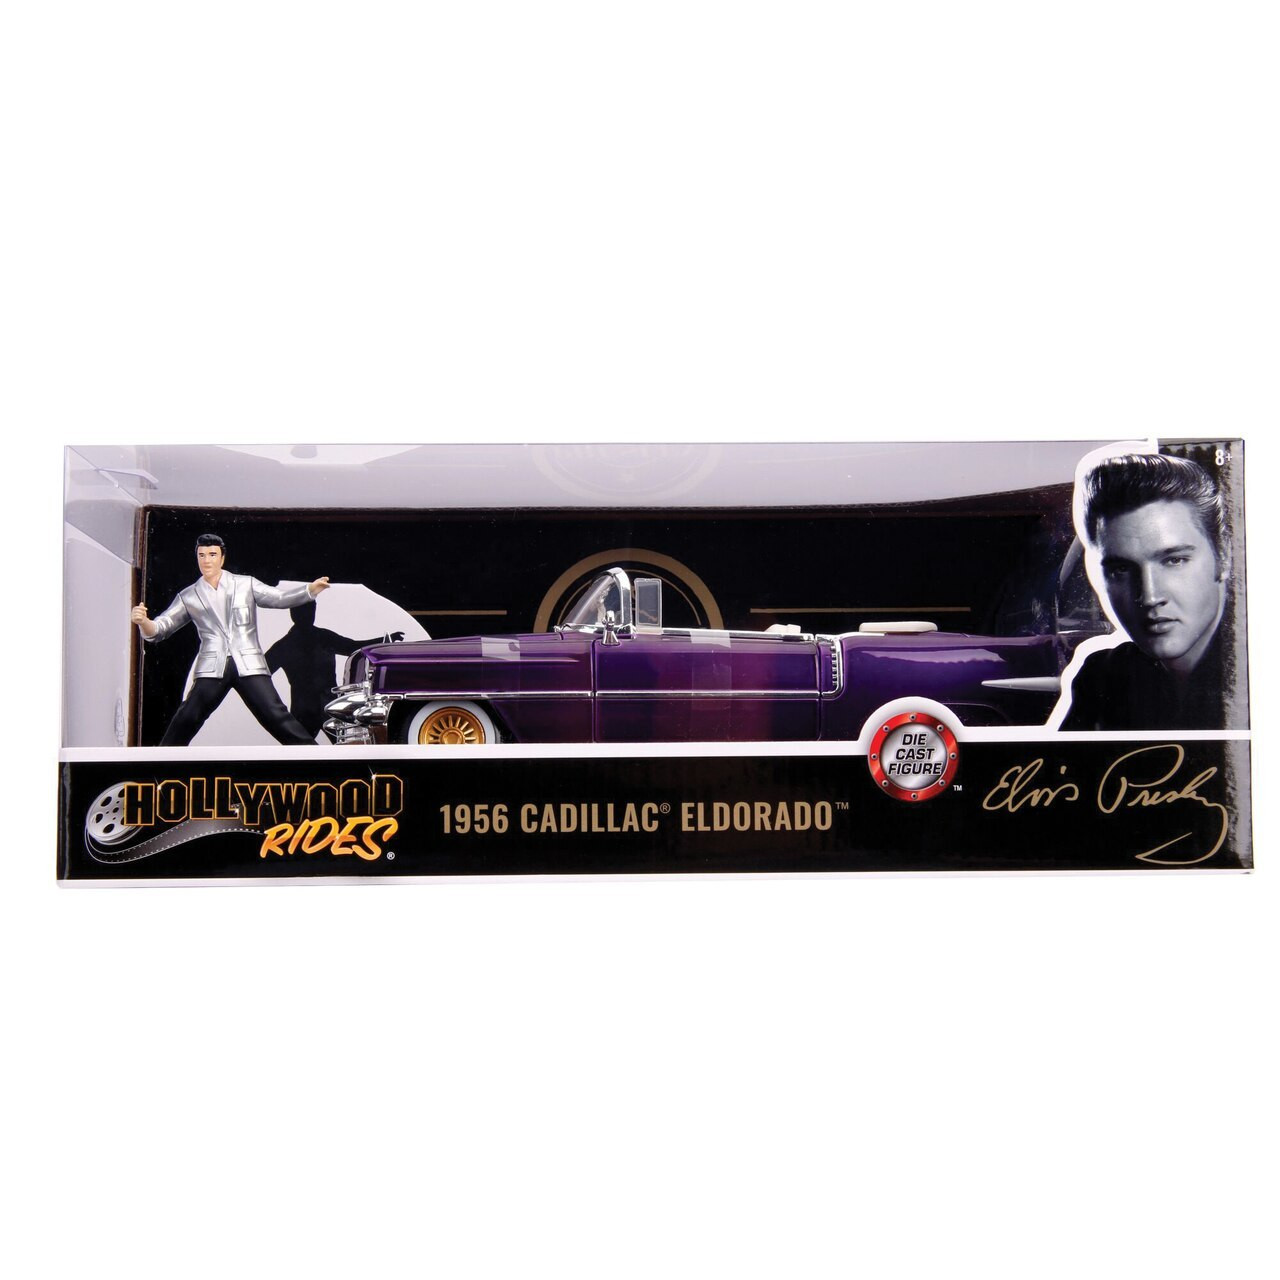 maletero y capó abatible Jada Cadillac El Dorado 1956 Presley Coche de juguete de Eloro en die-cast morado puertas color lila 253255011 incluye figura Elvis a escala 1:24 